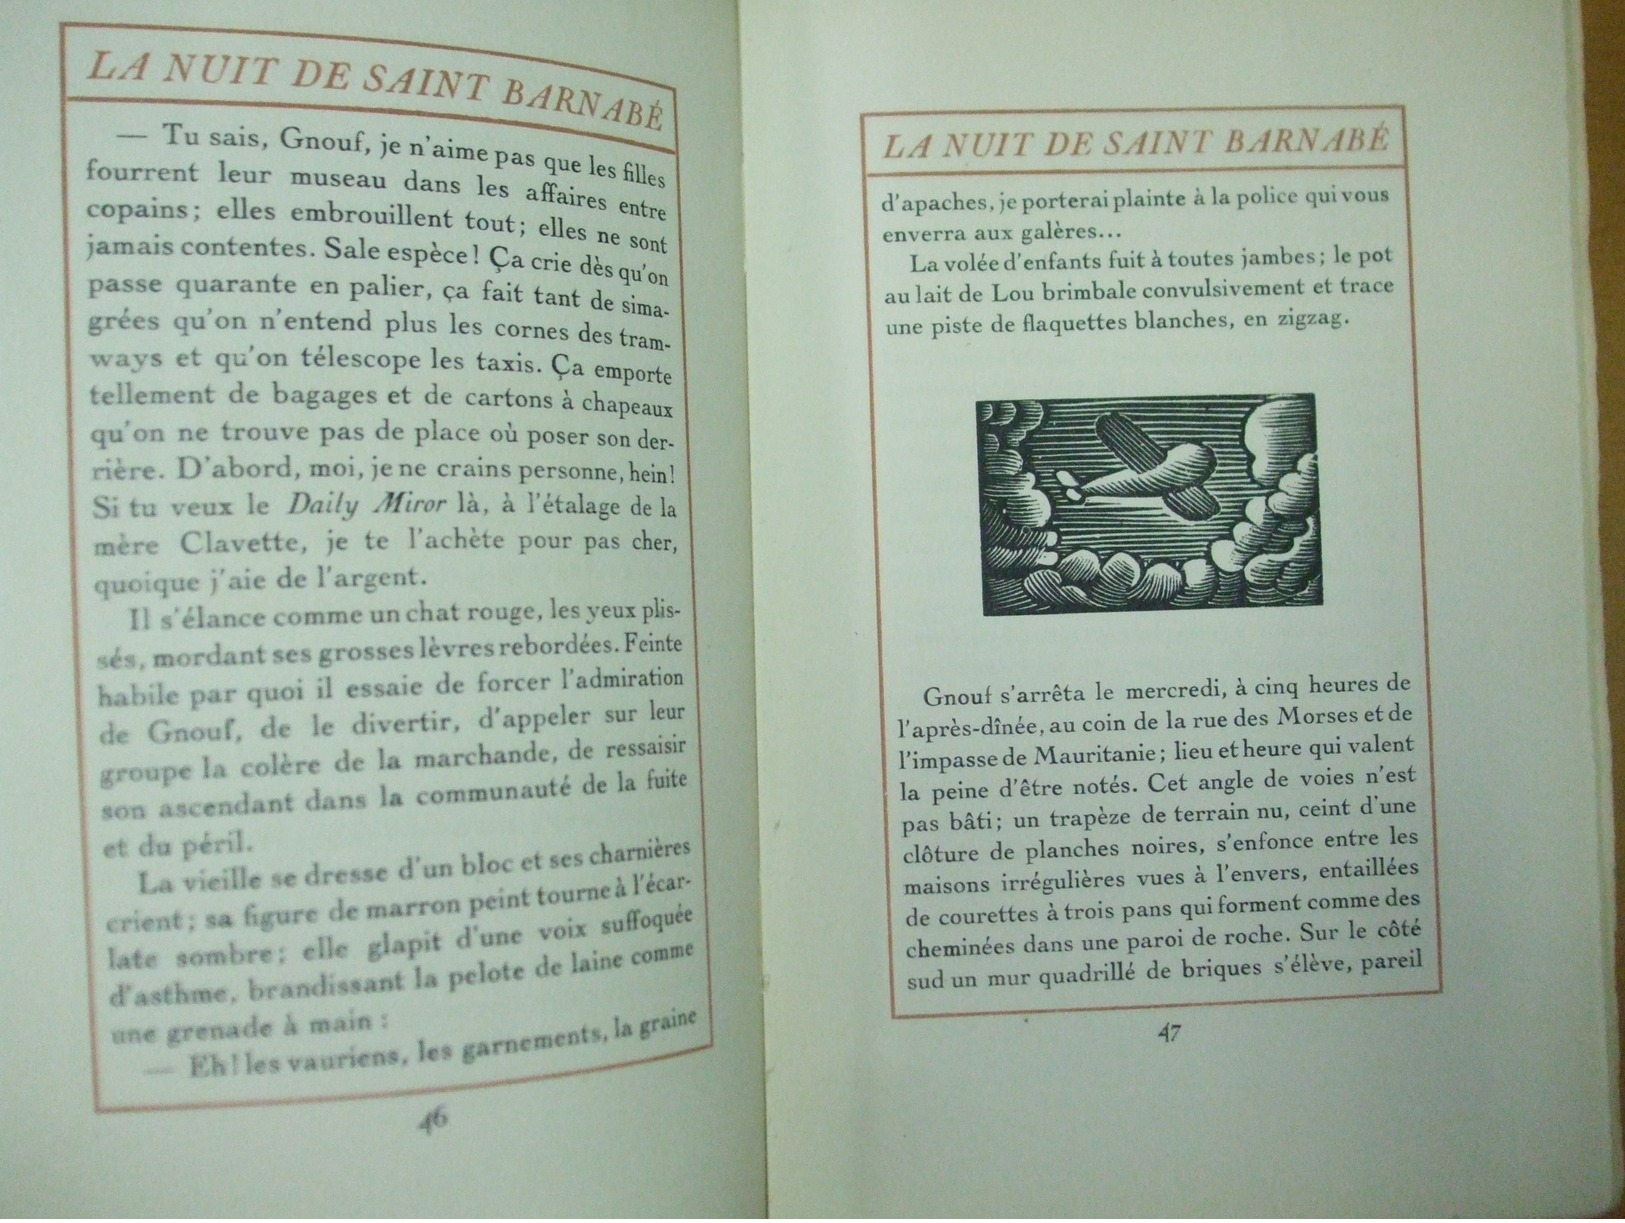 Al. Arnoux La Nuit De Saint Barnabe Paris 1921 Illustrations D. Galanis Book Number 545 From 860 - 1901-1940